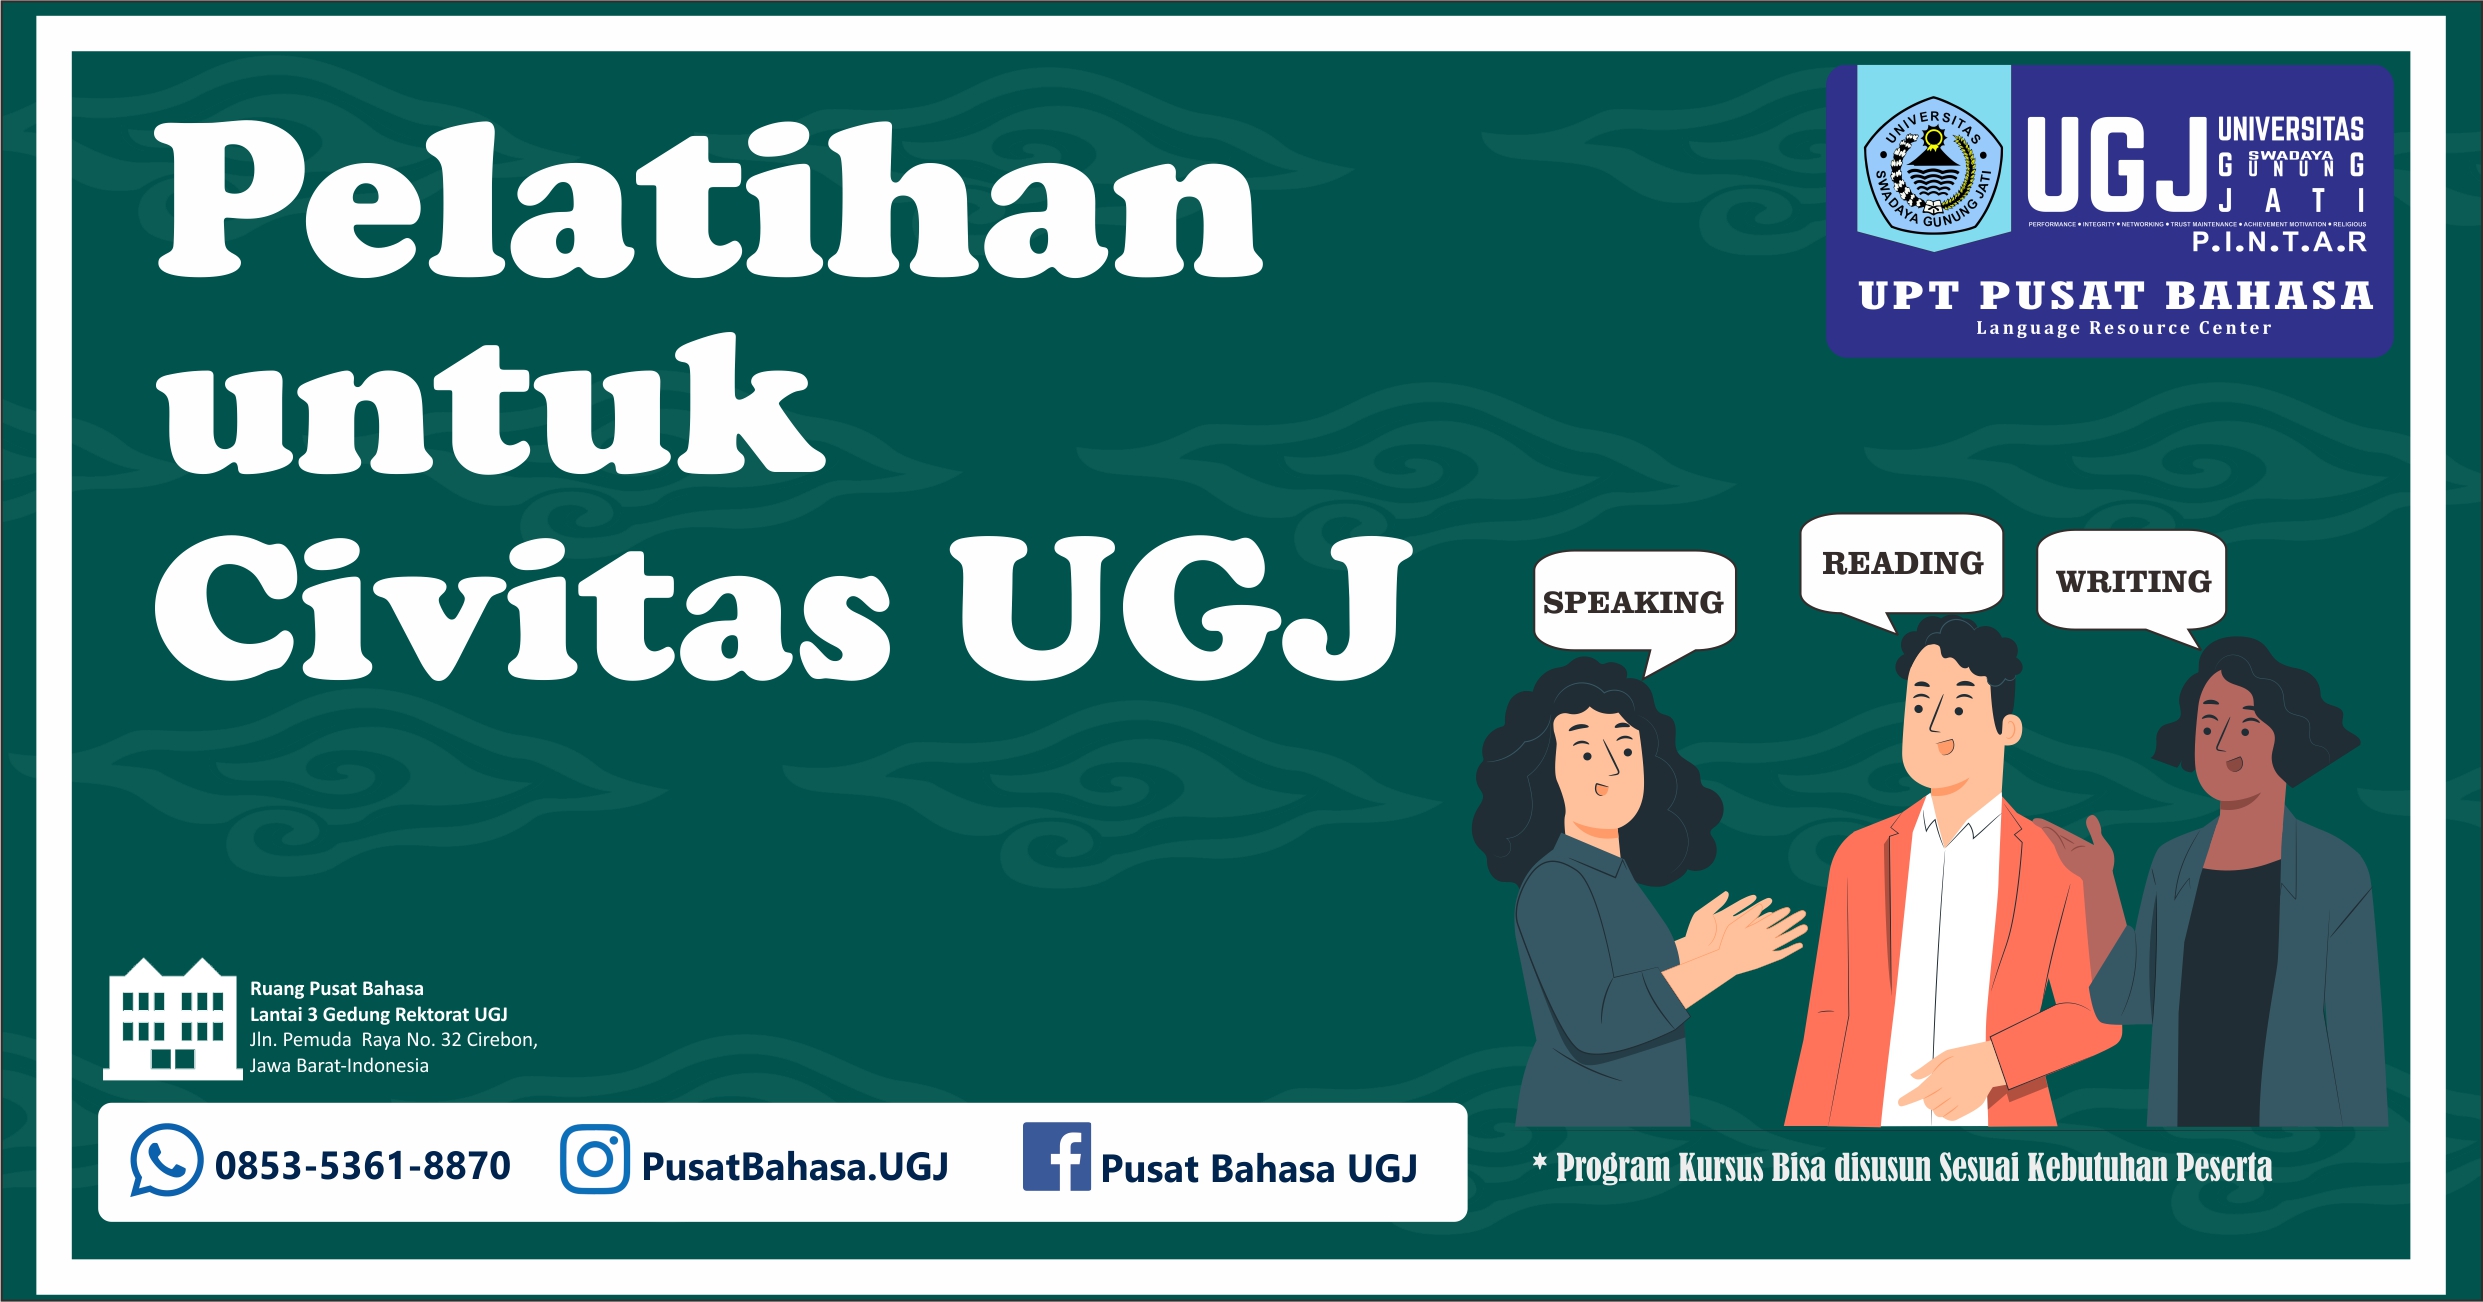 English for UGJ Executives